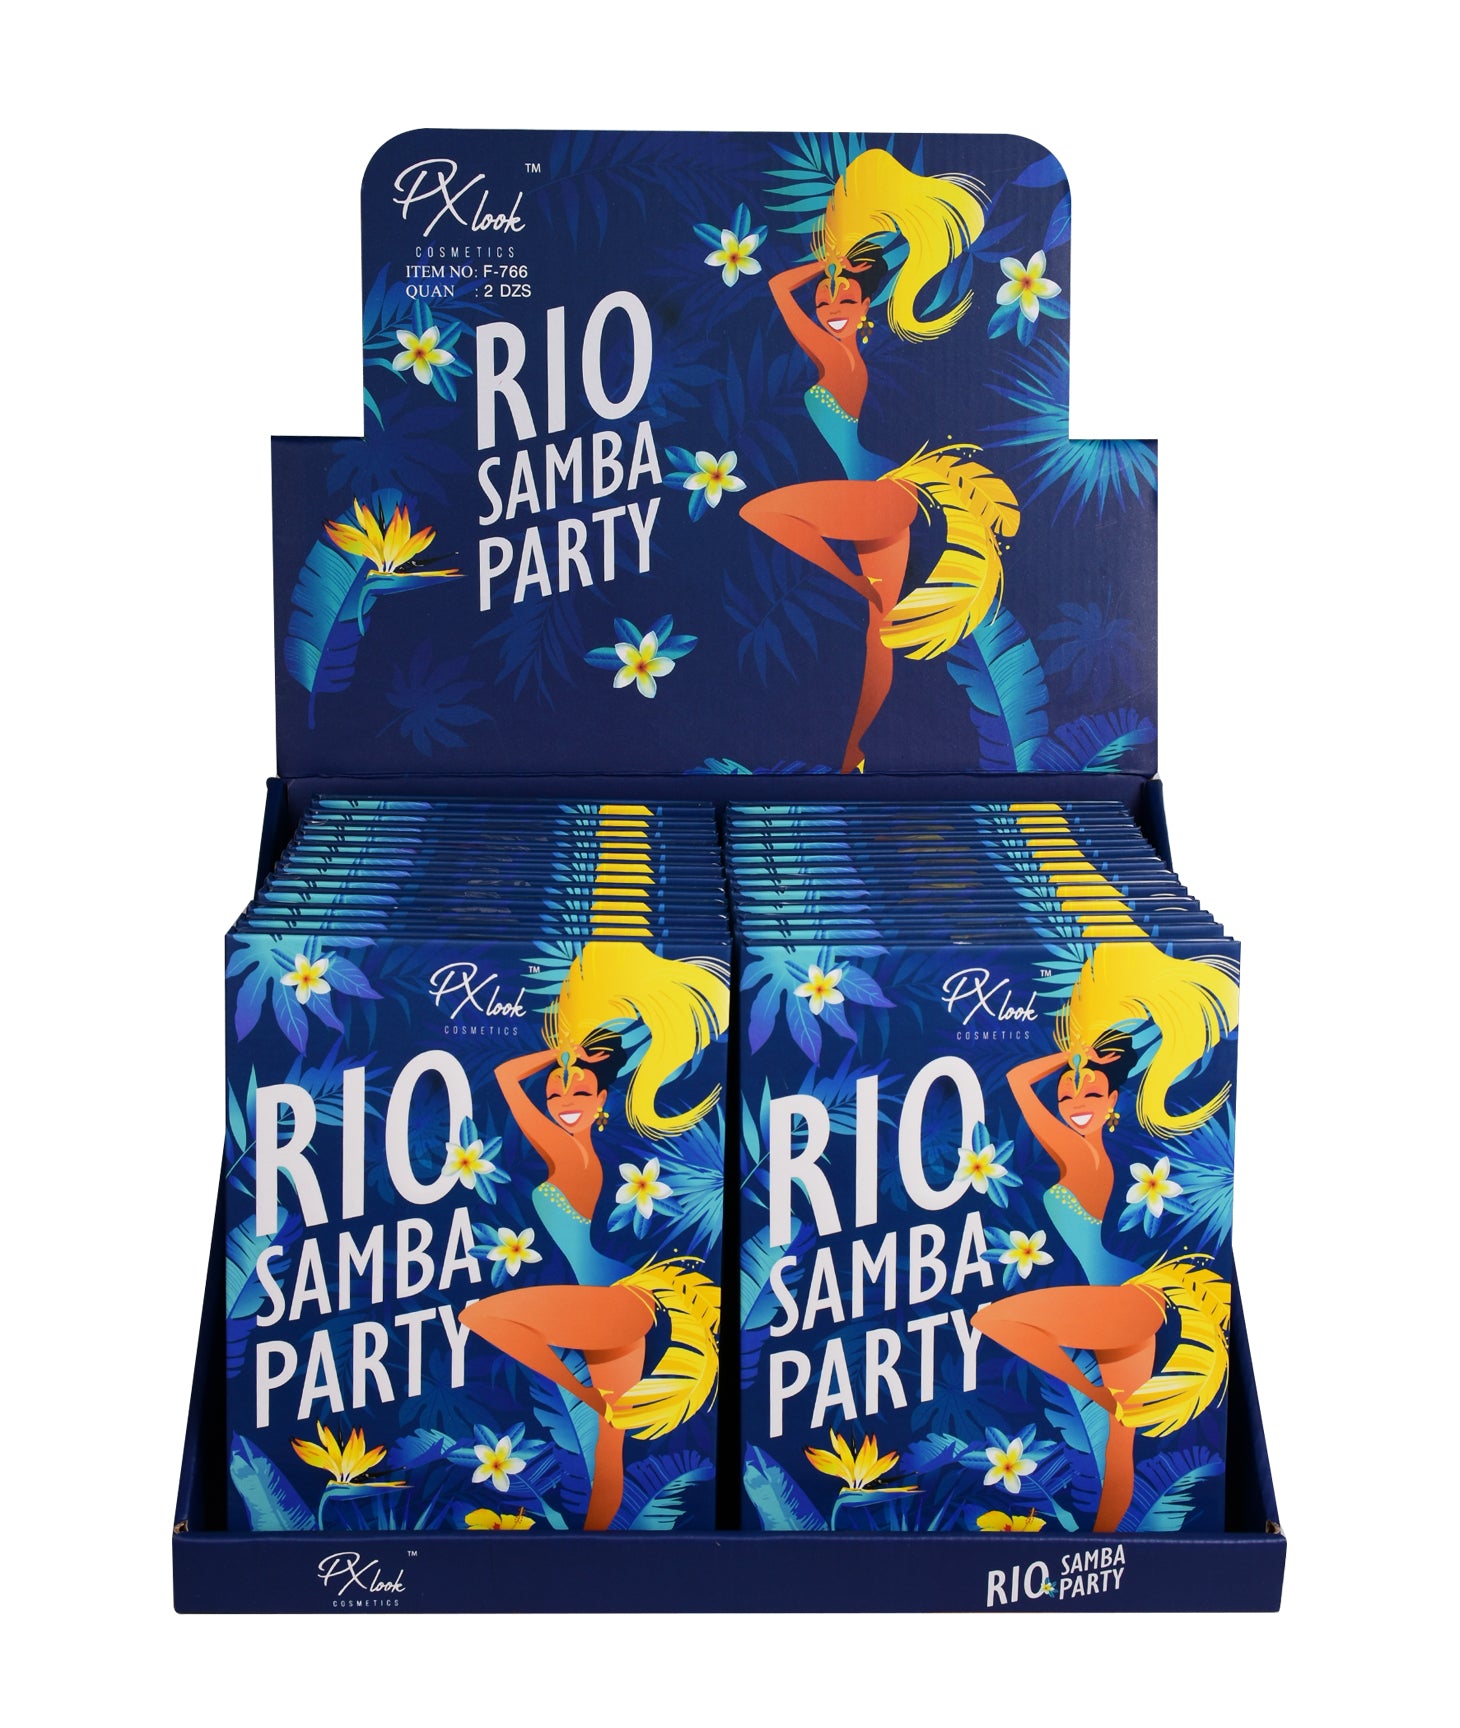 PXLOOK RIO SAMBA PARTY